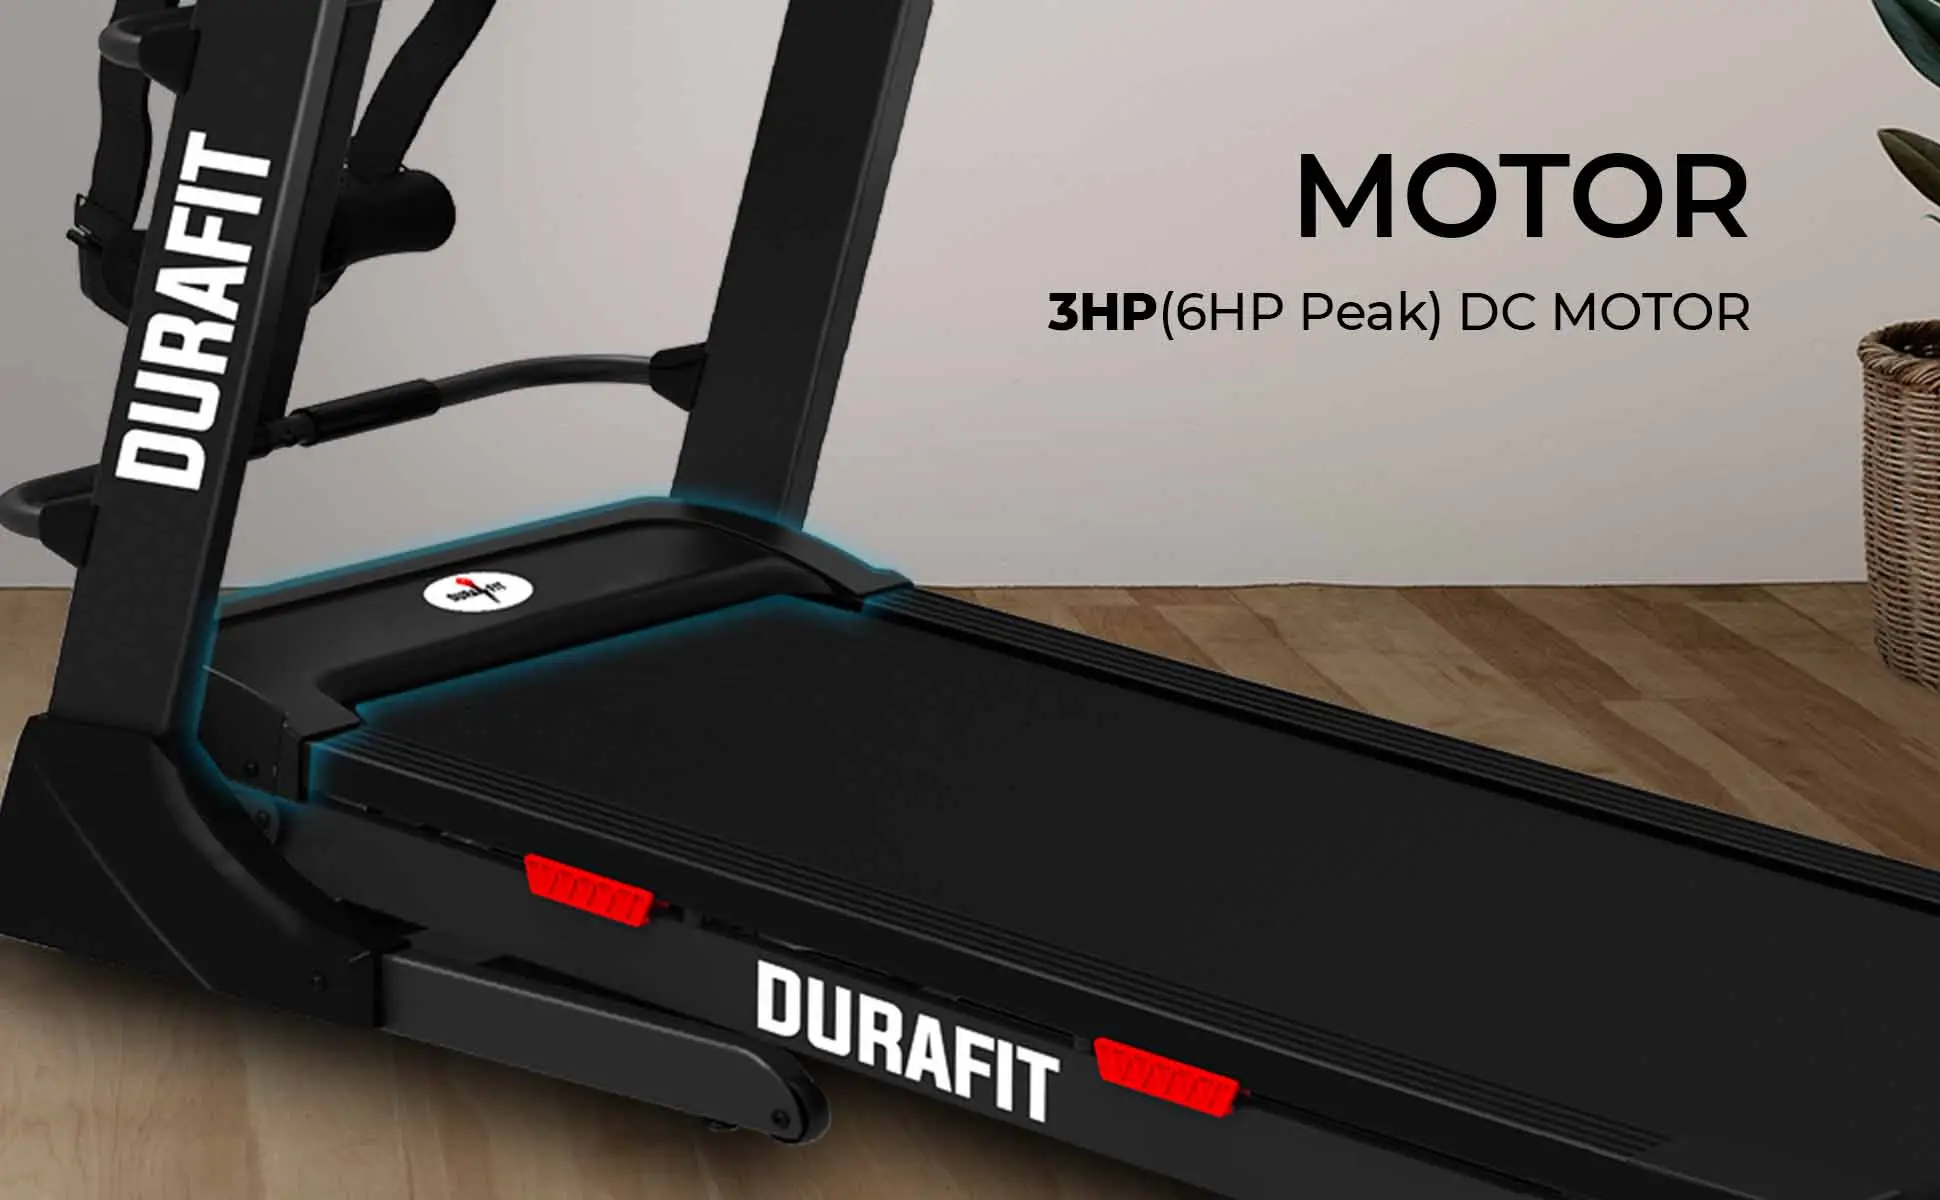 Durafit Mustang Multifunction Treadmill